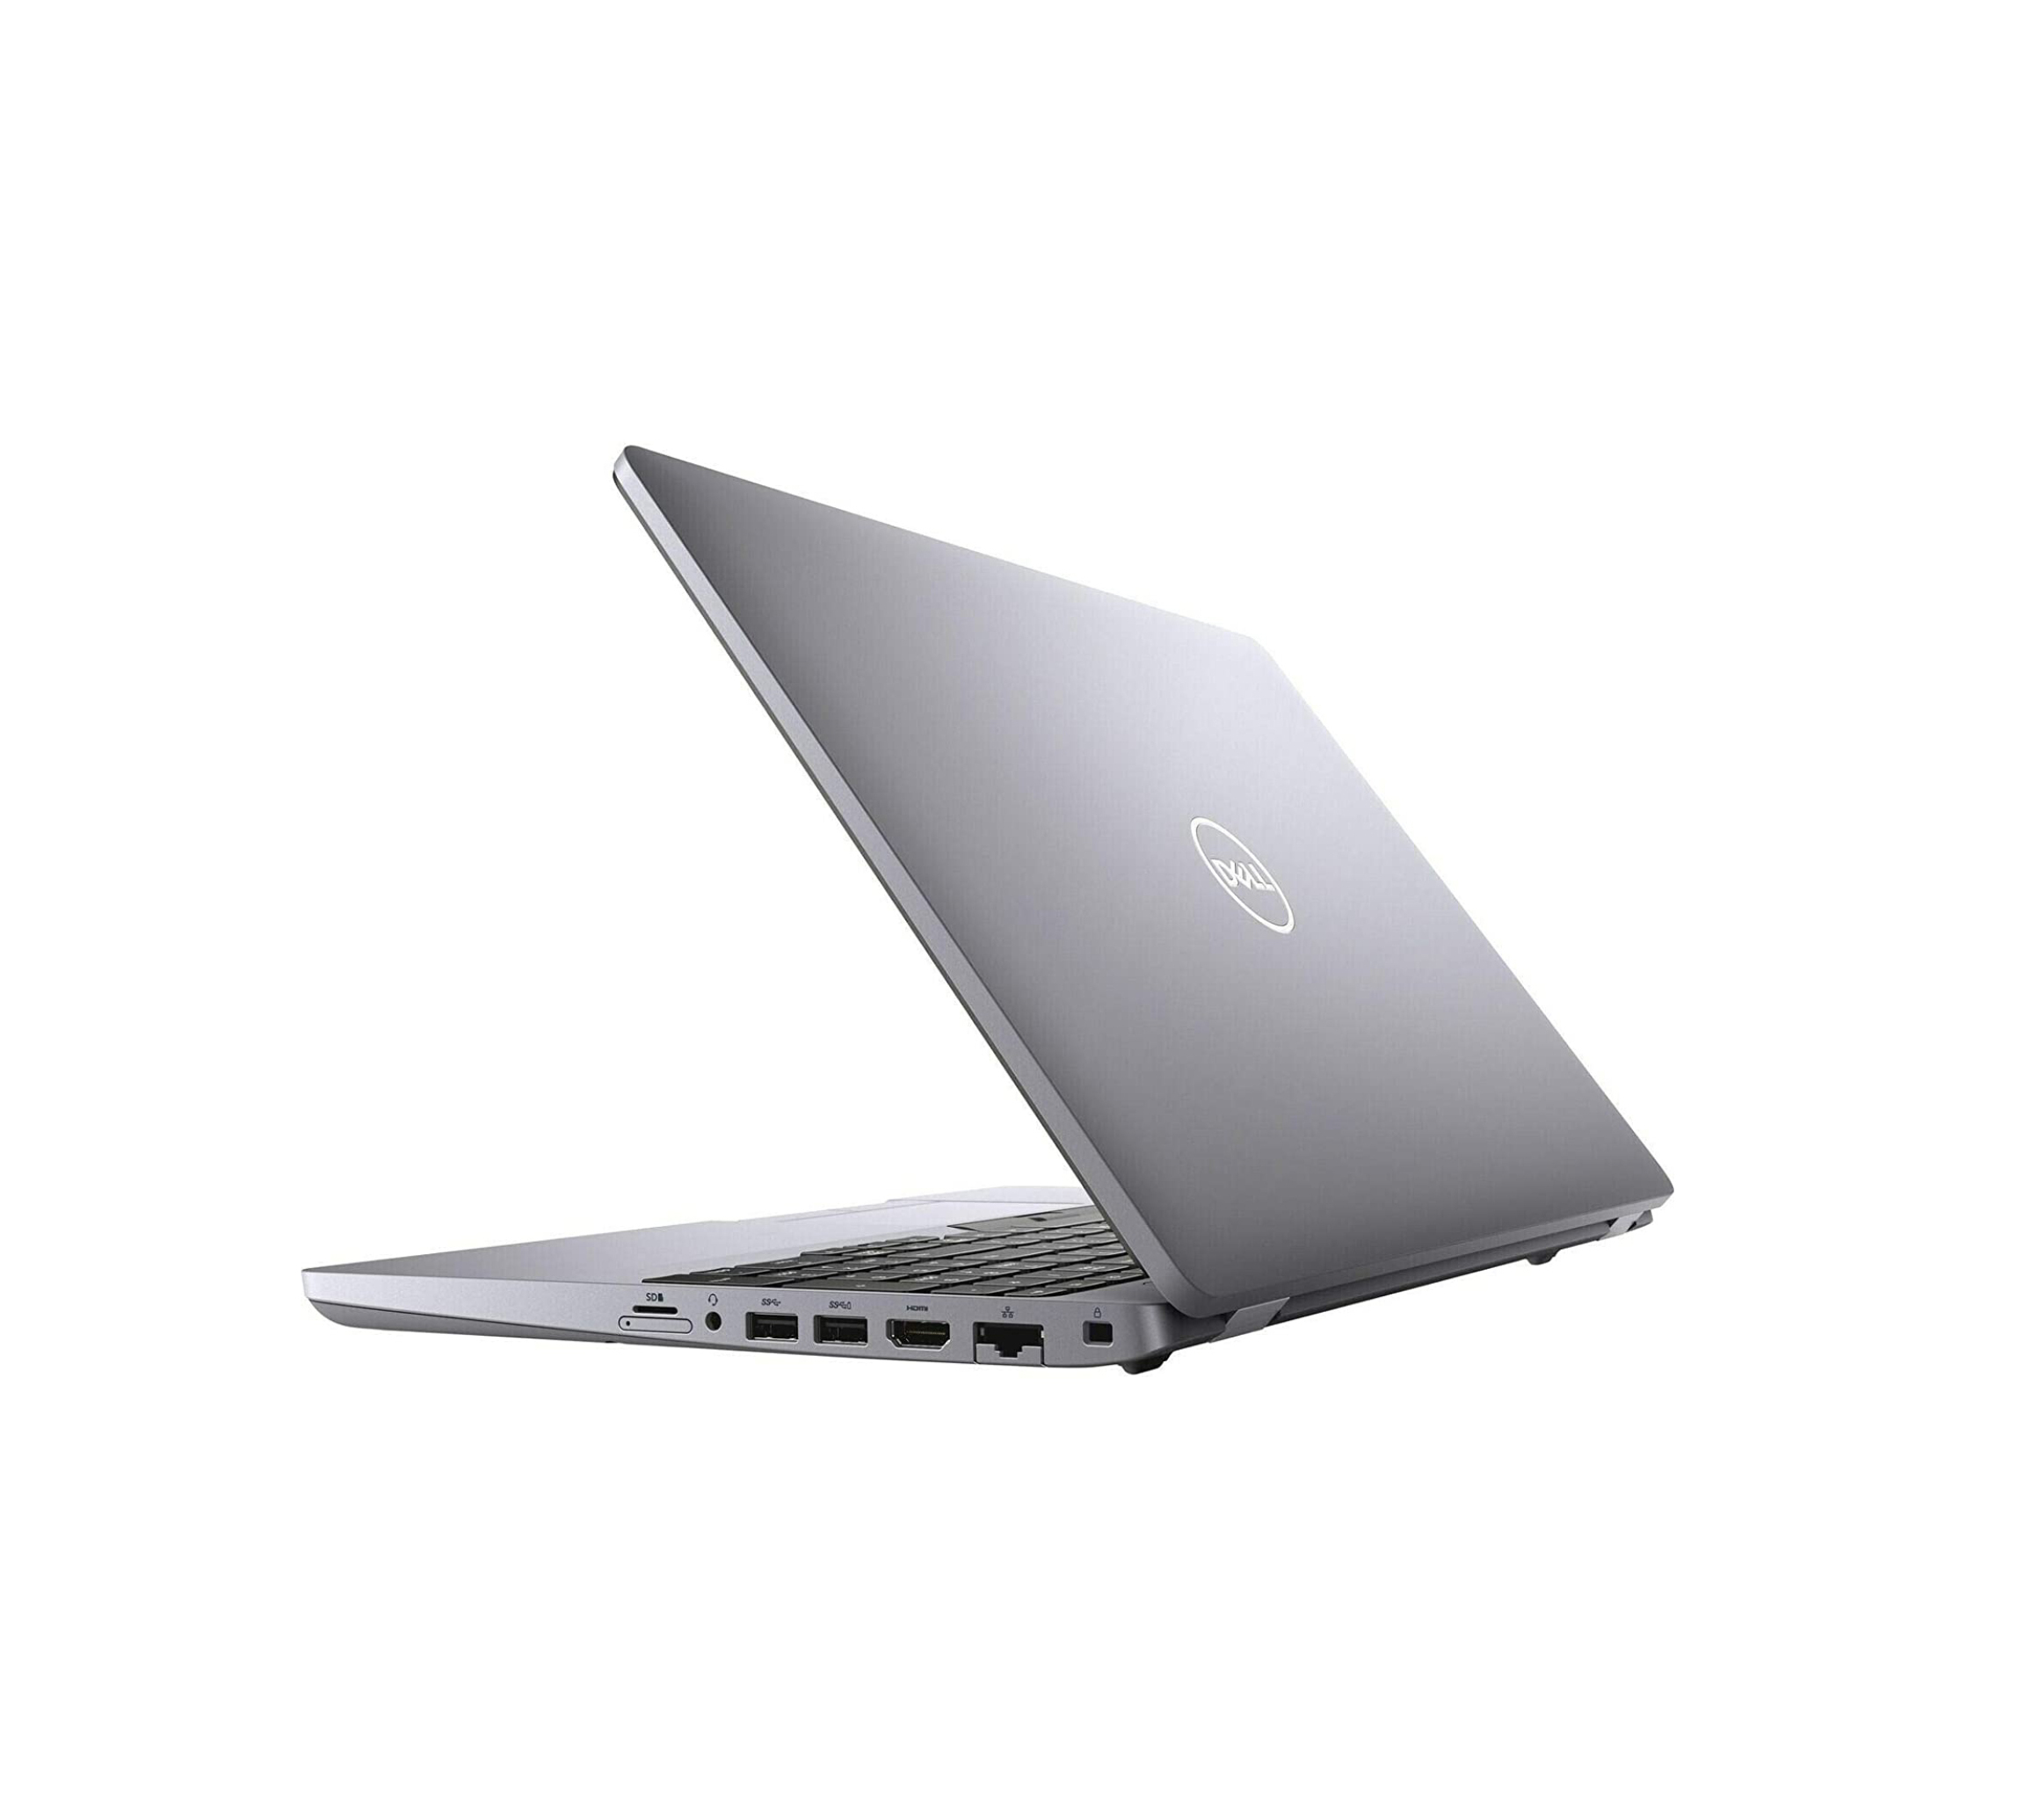  قیمت لپ تاپ دل 3551 مدل Dell Precision 3550 | لاکچری لپ تاپ 